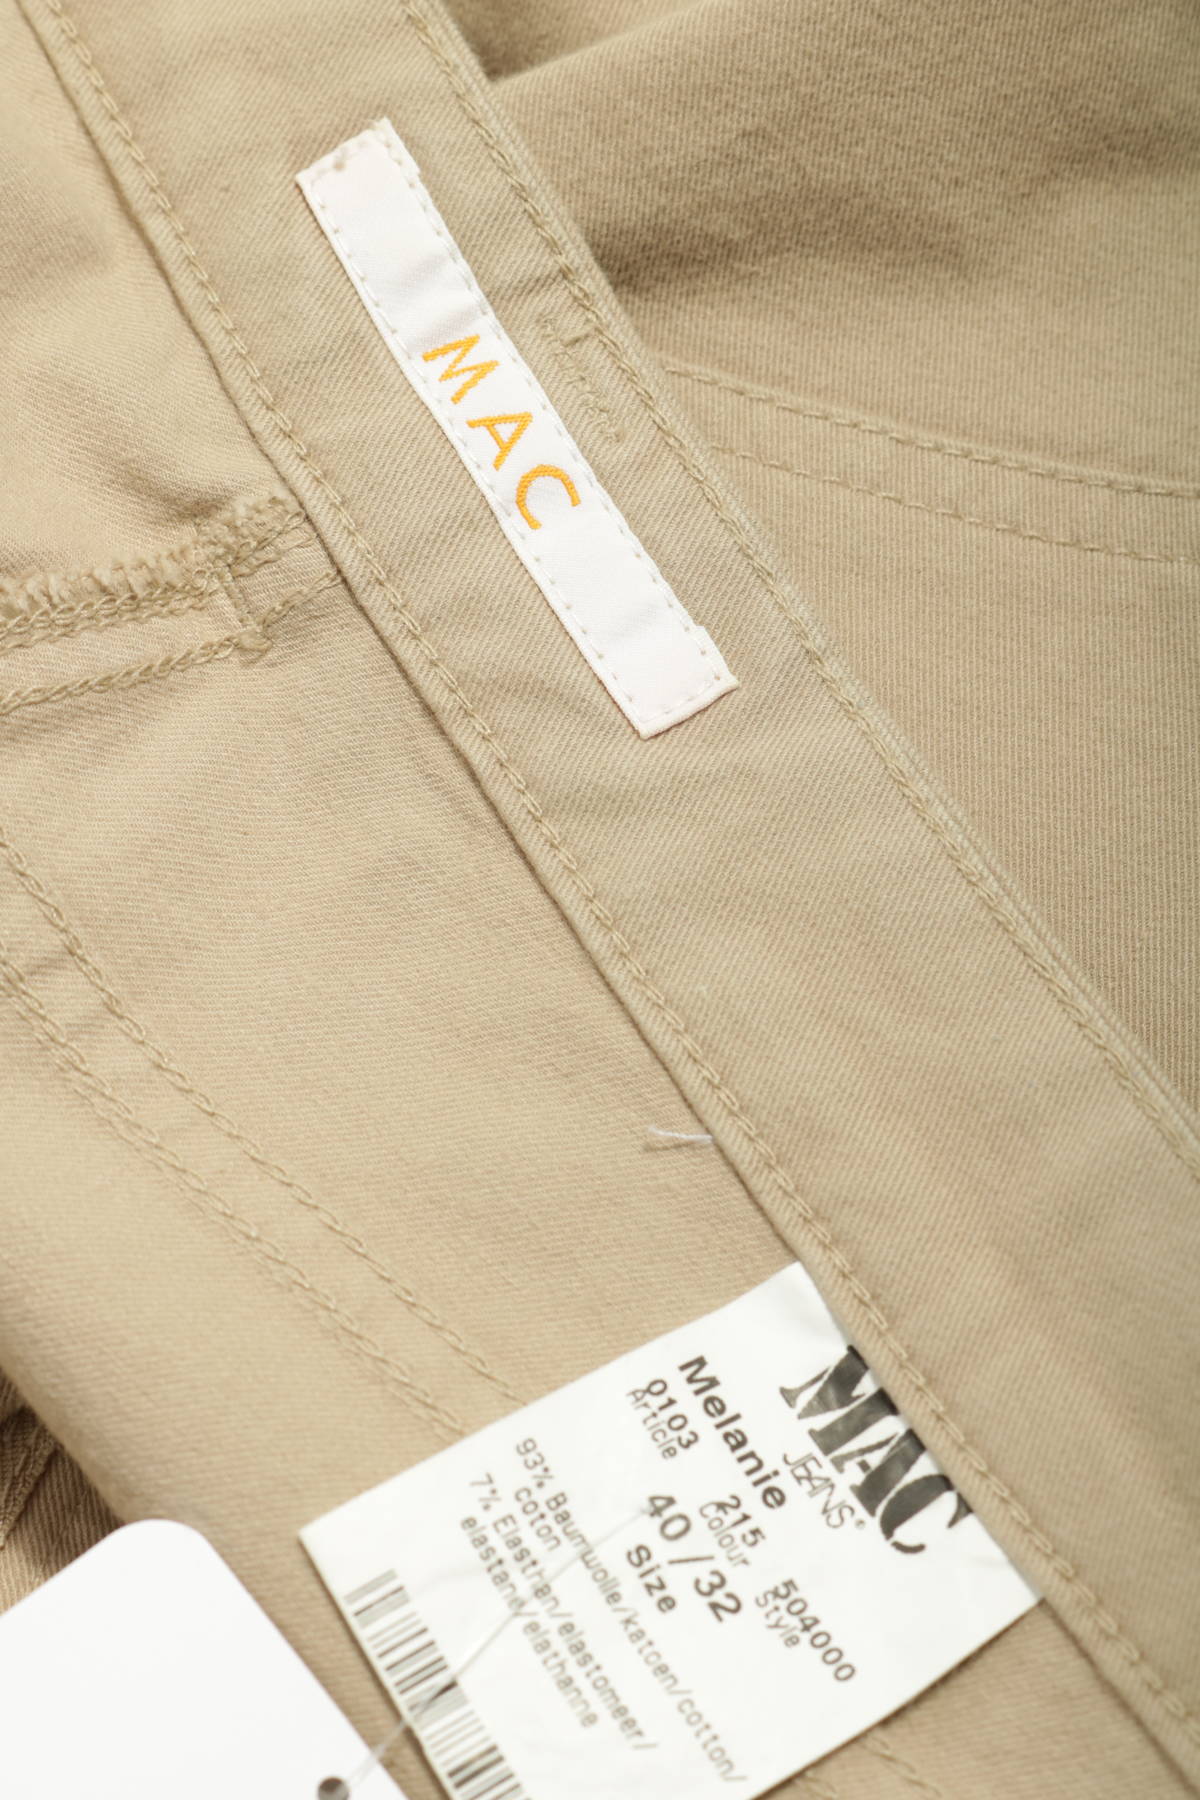 Панталон MAC4